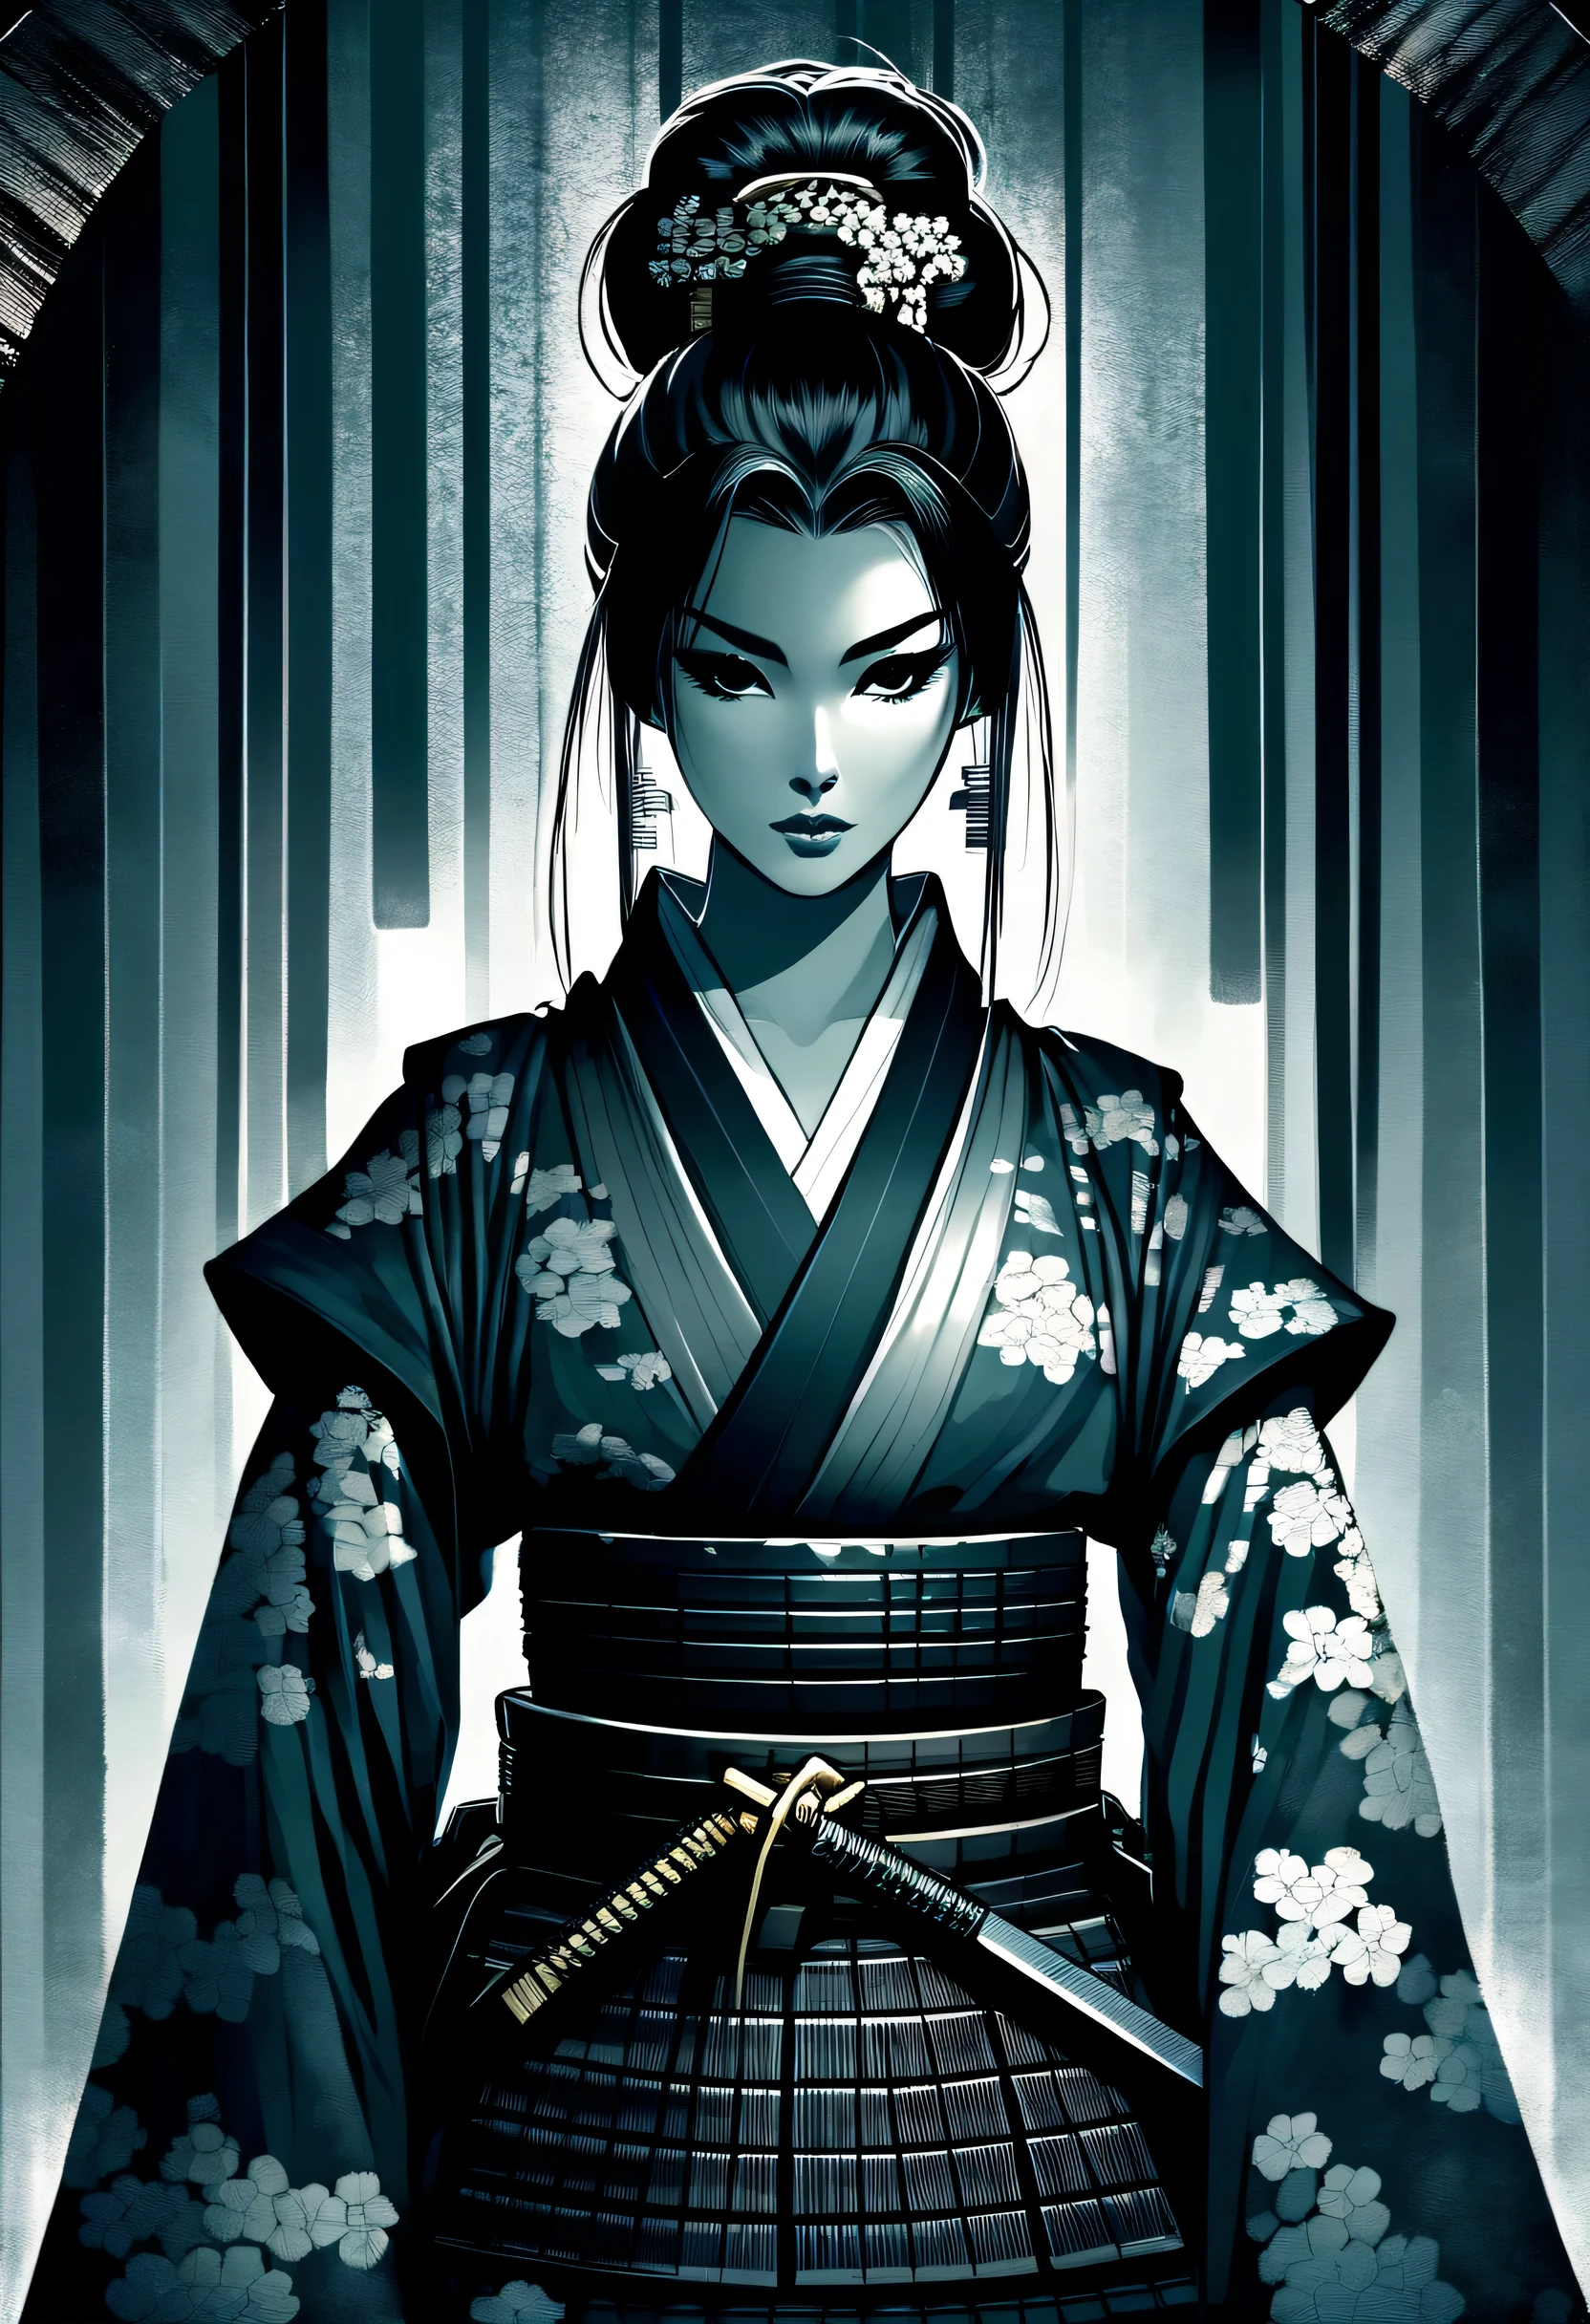 seul, Une fille samouraï d&#39;une beauté exceptionnelle se démarque, Visage délicat orné d&#39;un chignon, augmenter l&#39;aura intense. Avec des illustrations de dark fantasy, Pouvoir à considérer, La forme du visage triangulaire inversé améliore l&#39;élégance et l&#39;élégance, Les traits délicats d&#39;un samouraï, Mis en valeur par de superbes illustrations, Ajout de féminité à la personnalité féroce du samouraï, Seule l&#39;atmosphère ajoute à la beauté impressionnante, Créez des illustrations uniques et visuellement diversifiées, Une imposante samouraïe aux traits délicats et au chignon, Améliore l&#39;élégance et l&#39;élégance des ombres, Paramètre Dark Fantasy uniquement, Ajoutez des détails à vos personnages captivants, Fonctionnalité d&#39;invite créative et intéressante, Avec des illustrations de dark fantasy奥行きを表現, Créez visuellement un arrière-plan de coup de pinceau unique sur une toile de fond de beauté déjà impressionnante., Sujet détaillé descriptif et complexe pour les illustrations,